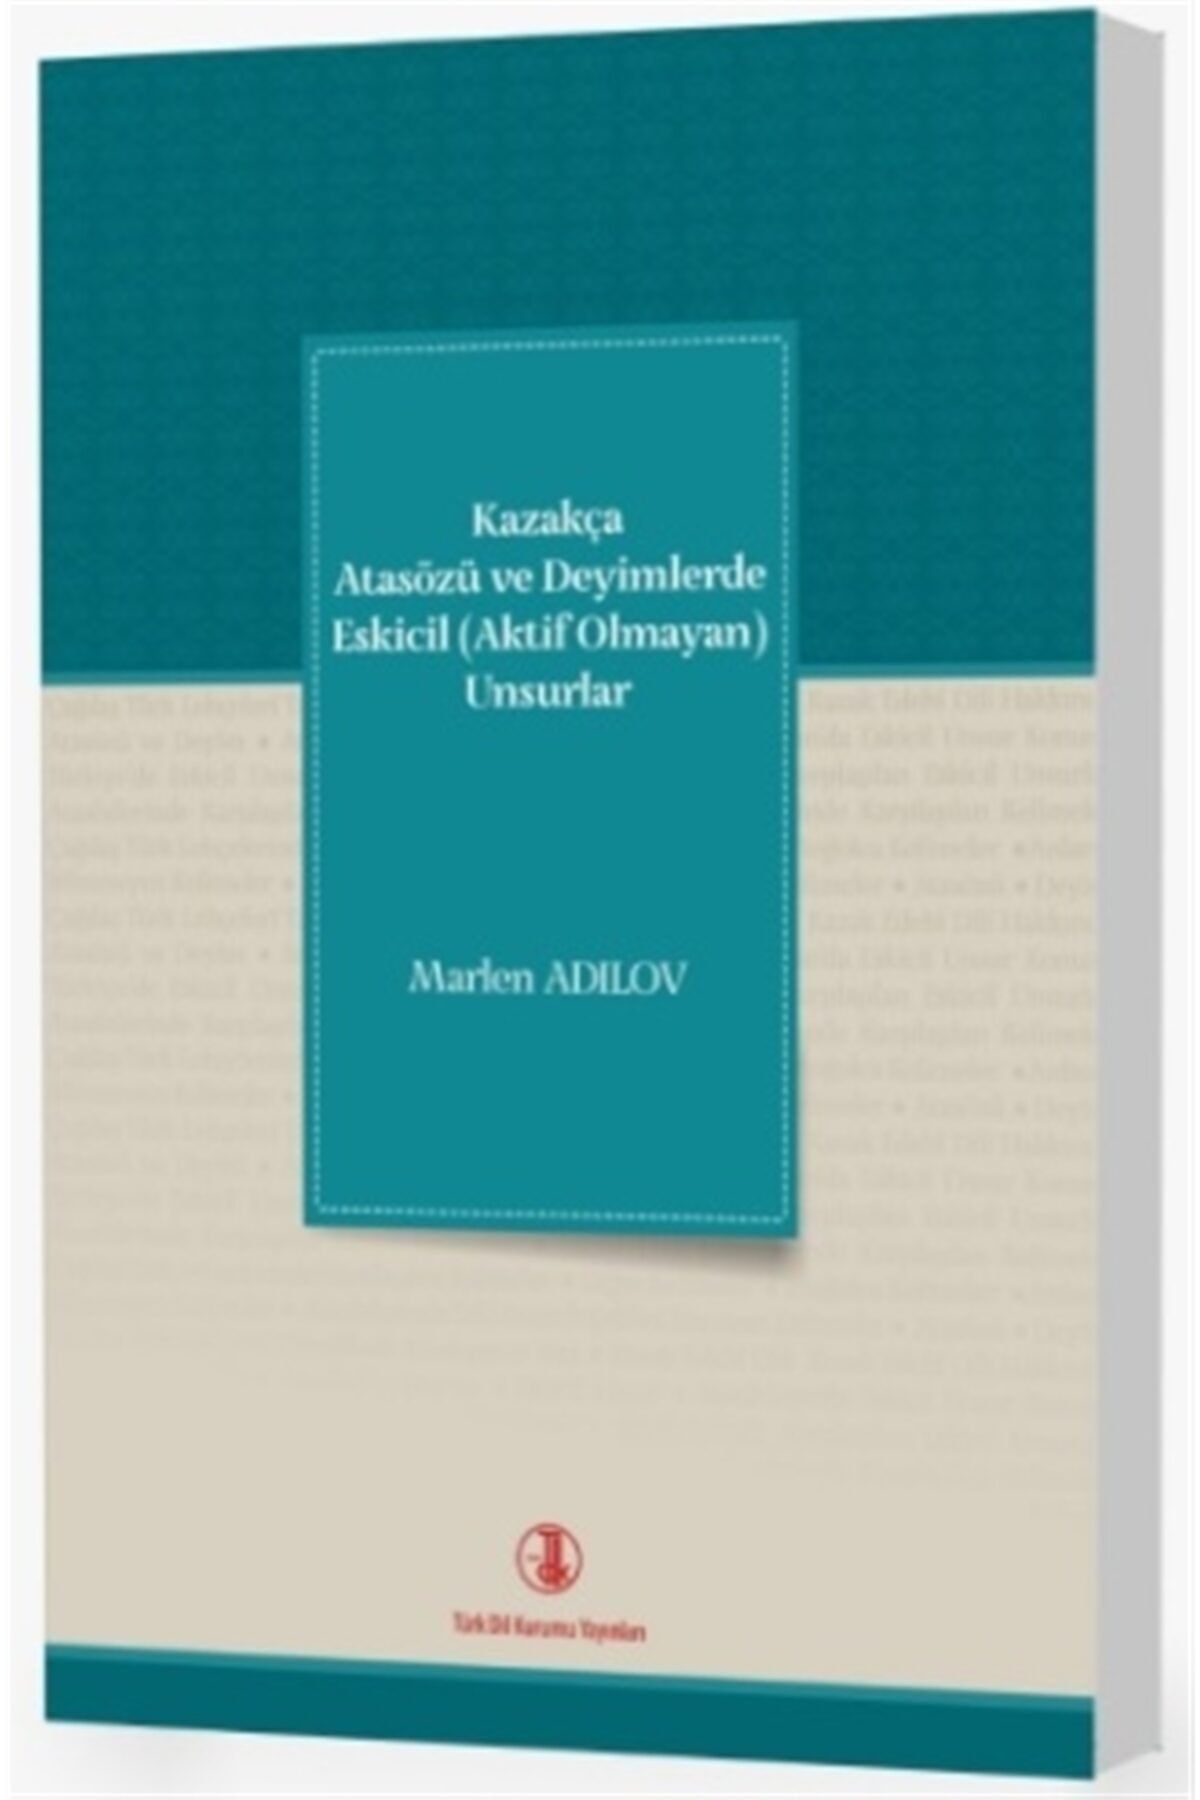 Türk Dil Kurumu Yayınları Kazakça Atasözü Ve Deyimlerde Eskicil (aktif Olmayan) Unsurlar - Marlen Adilov 9789751748089